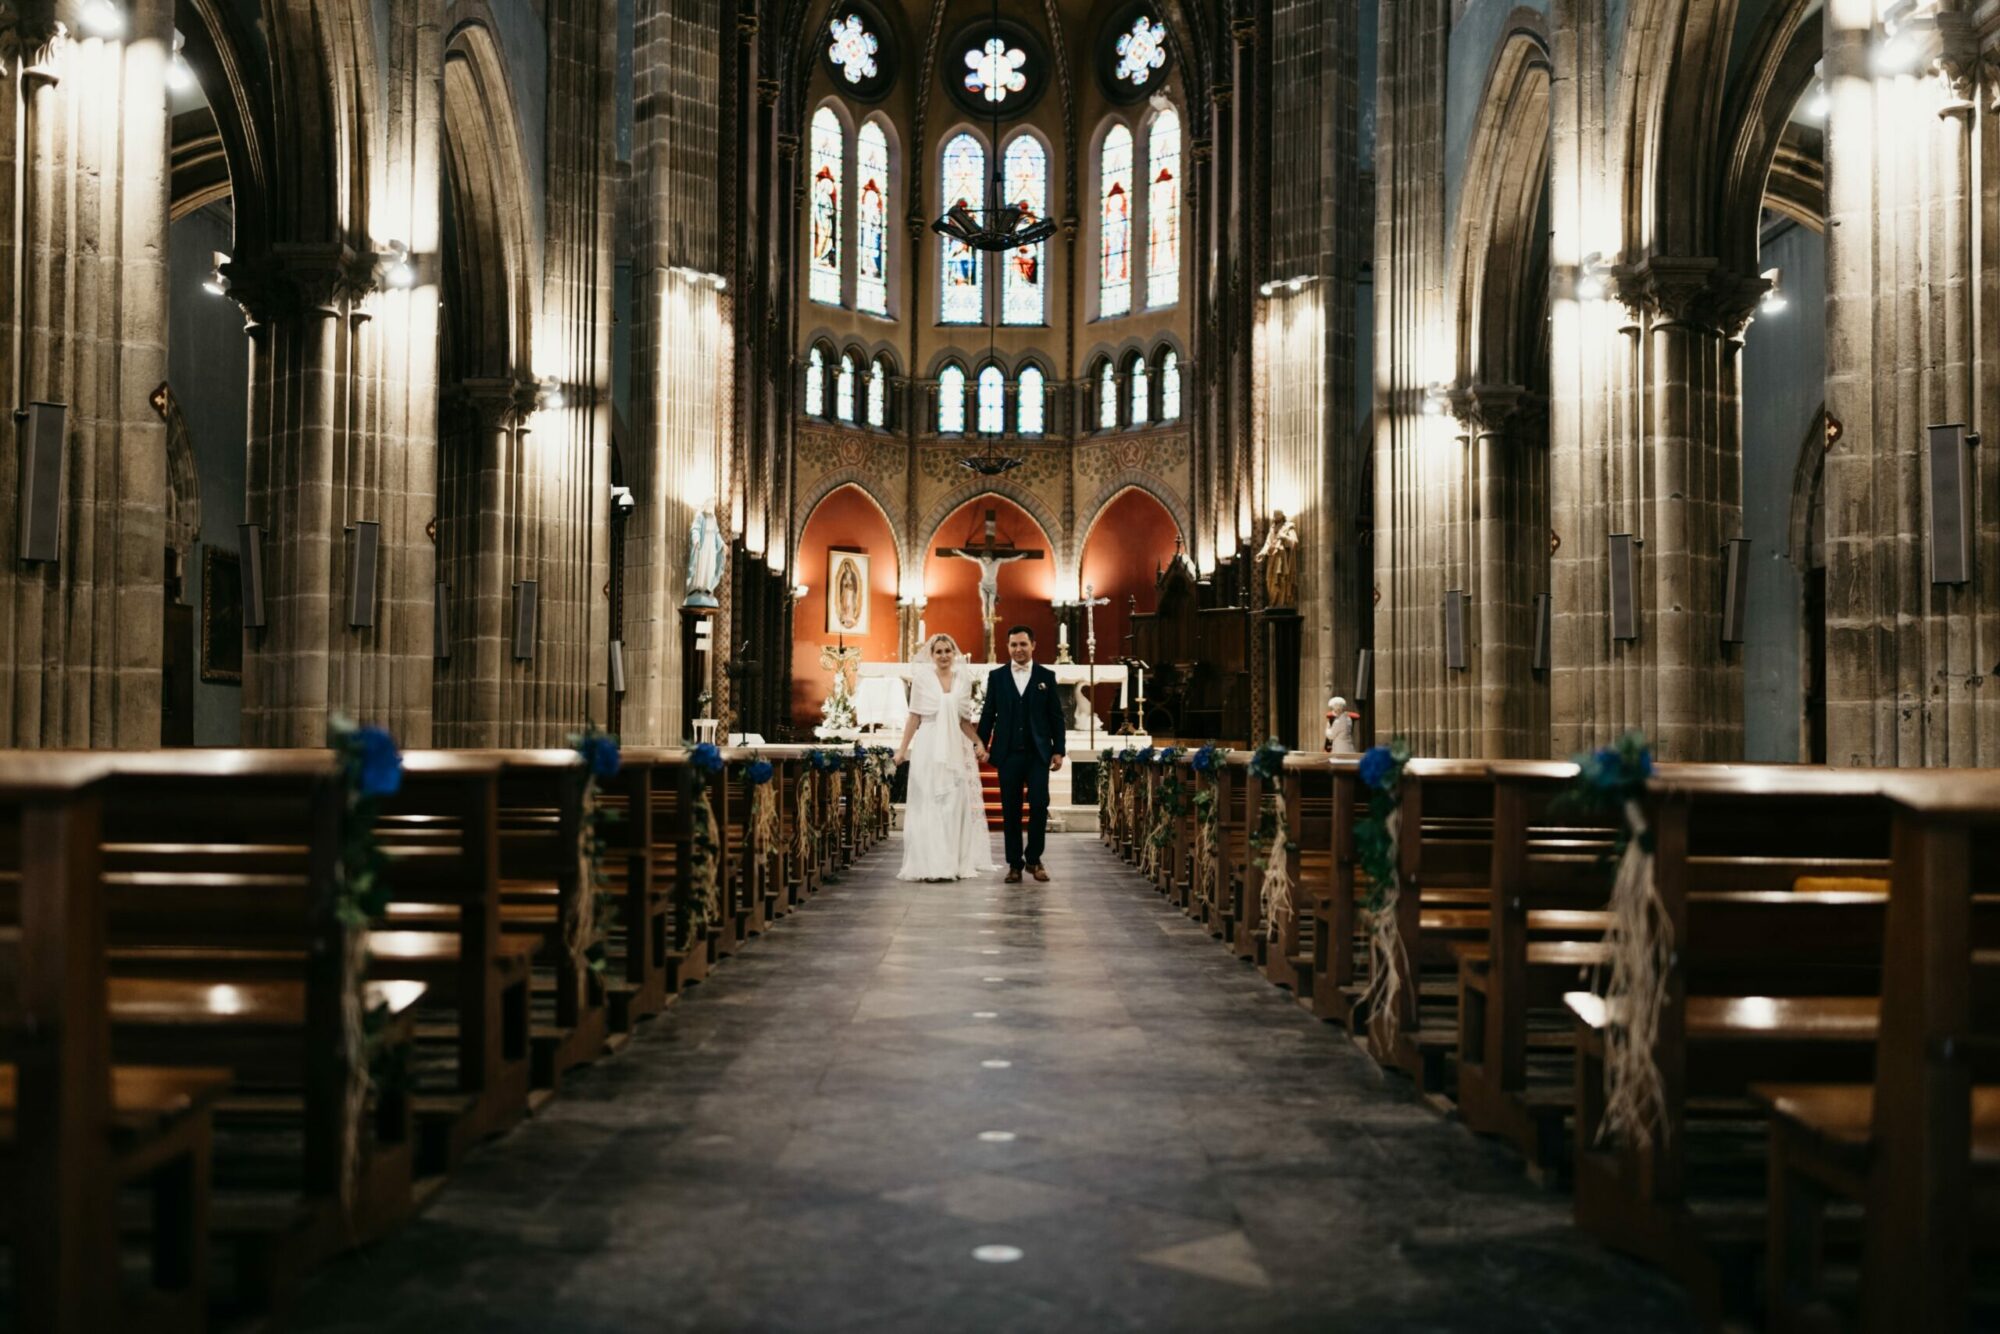 Sortie des mariés lors d'une cérémonie religieuse à l'église Saint-André de Bayonne